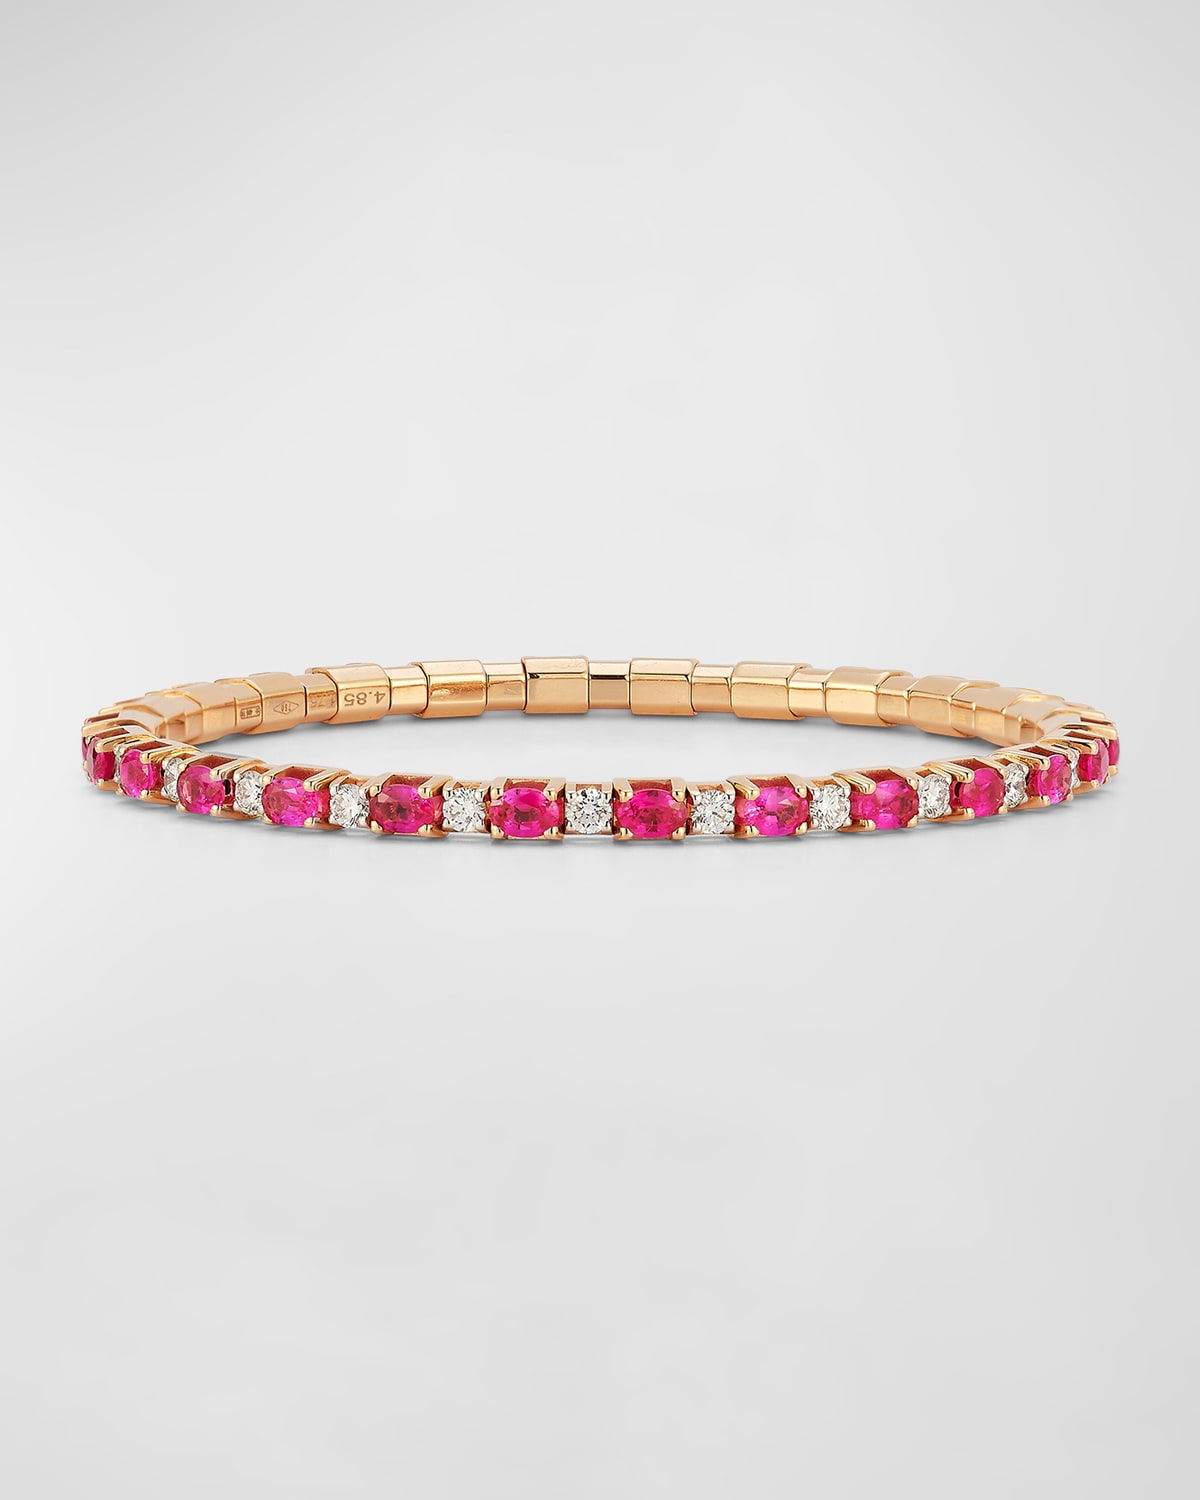 18K Rose Gold Oval Ruby and Diamond Stretch Tennis Bracelet, Size 6.5"L